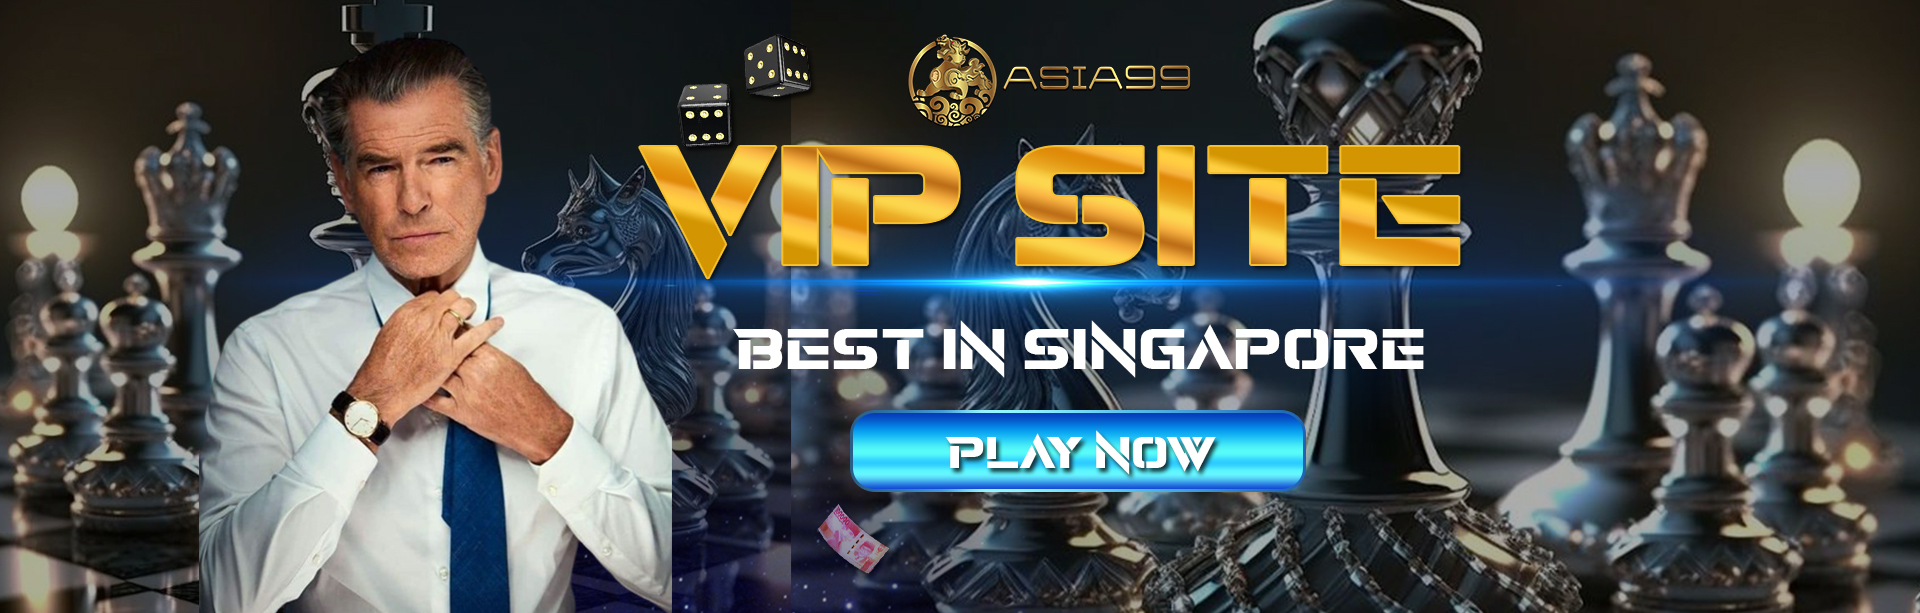 Asia99 Online Casino Singapore Biggest VIP Account Game in Singapore